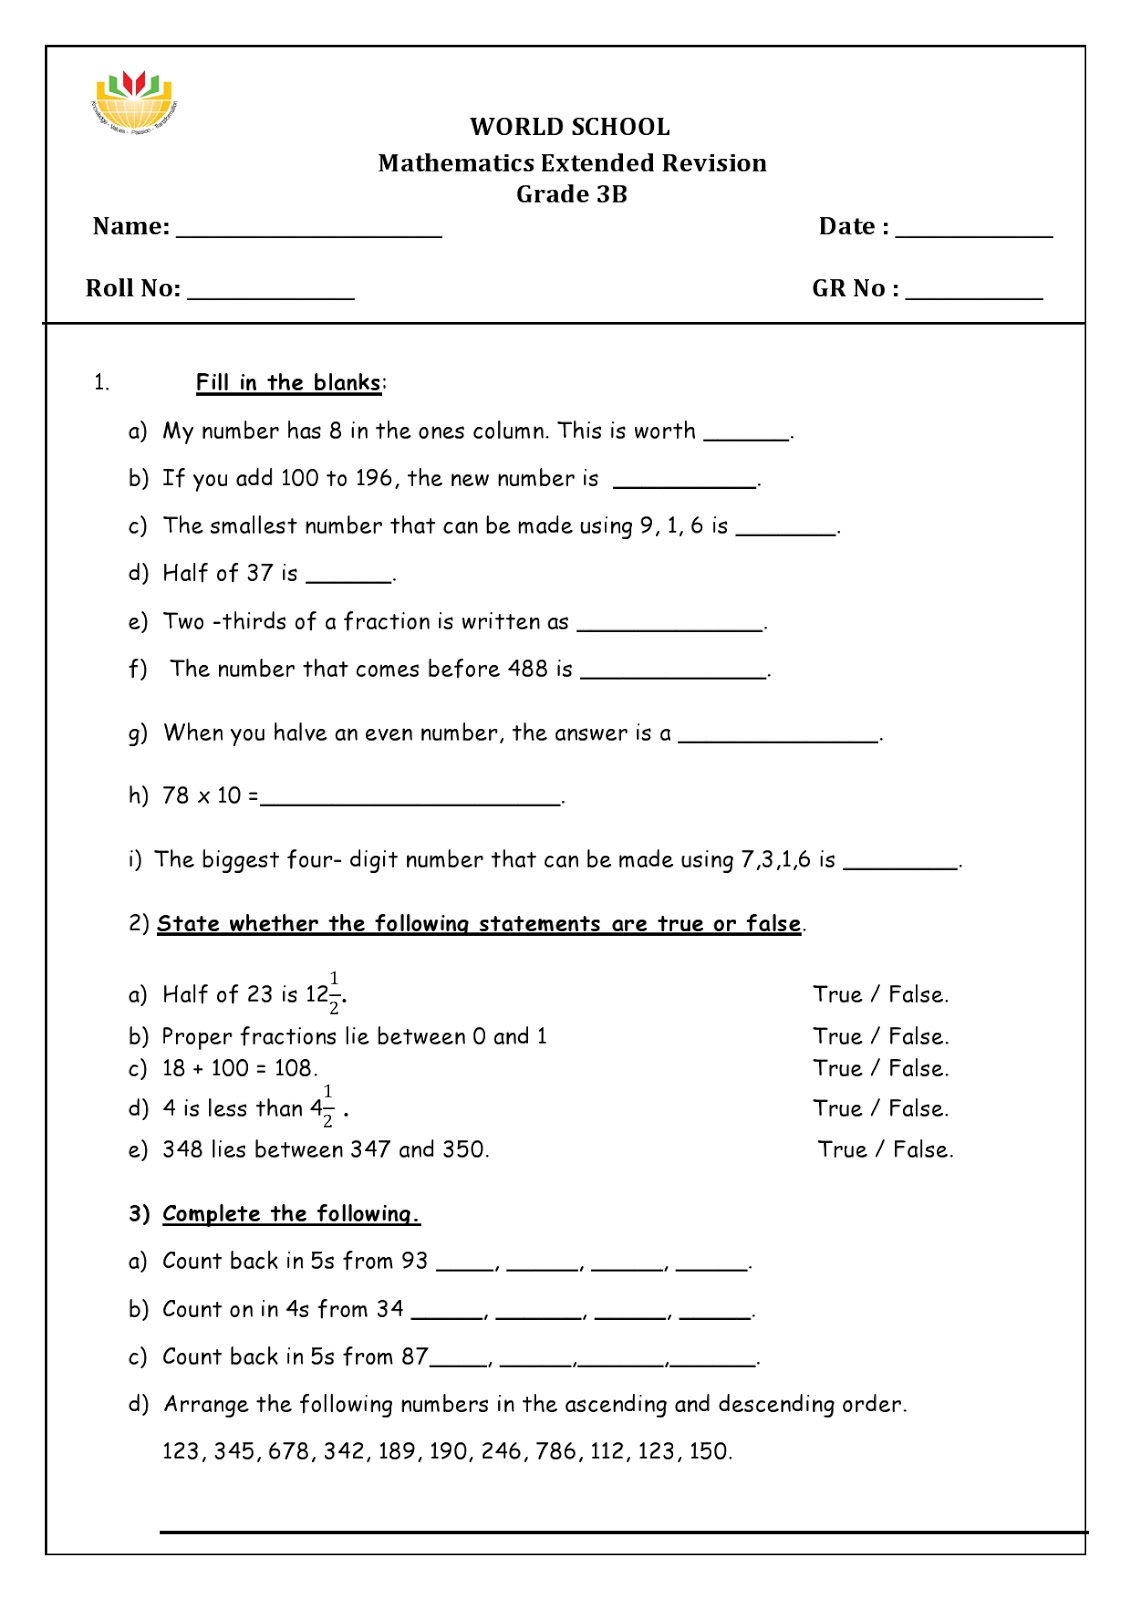 birla world school oman revision worksheets for grade 3